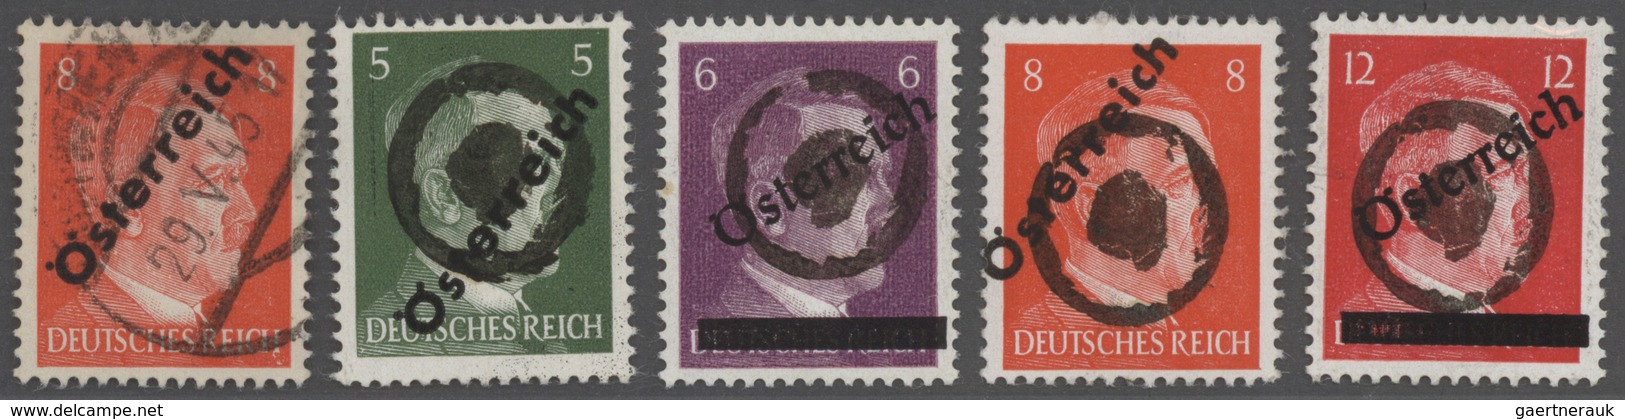 Österreich - Stempel: 1945, Sammlung der WIENER KLECKSSTEMPEL auf Überdruckausgaben in 7 Bänden, ges